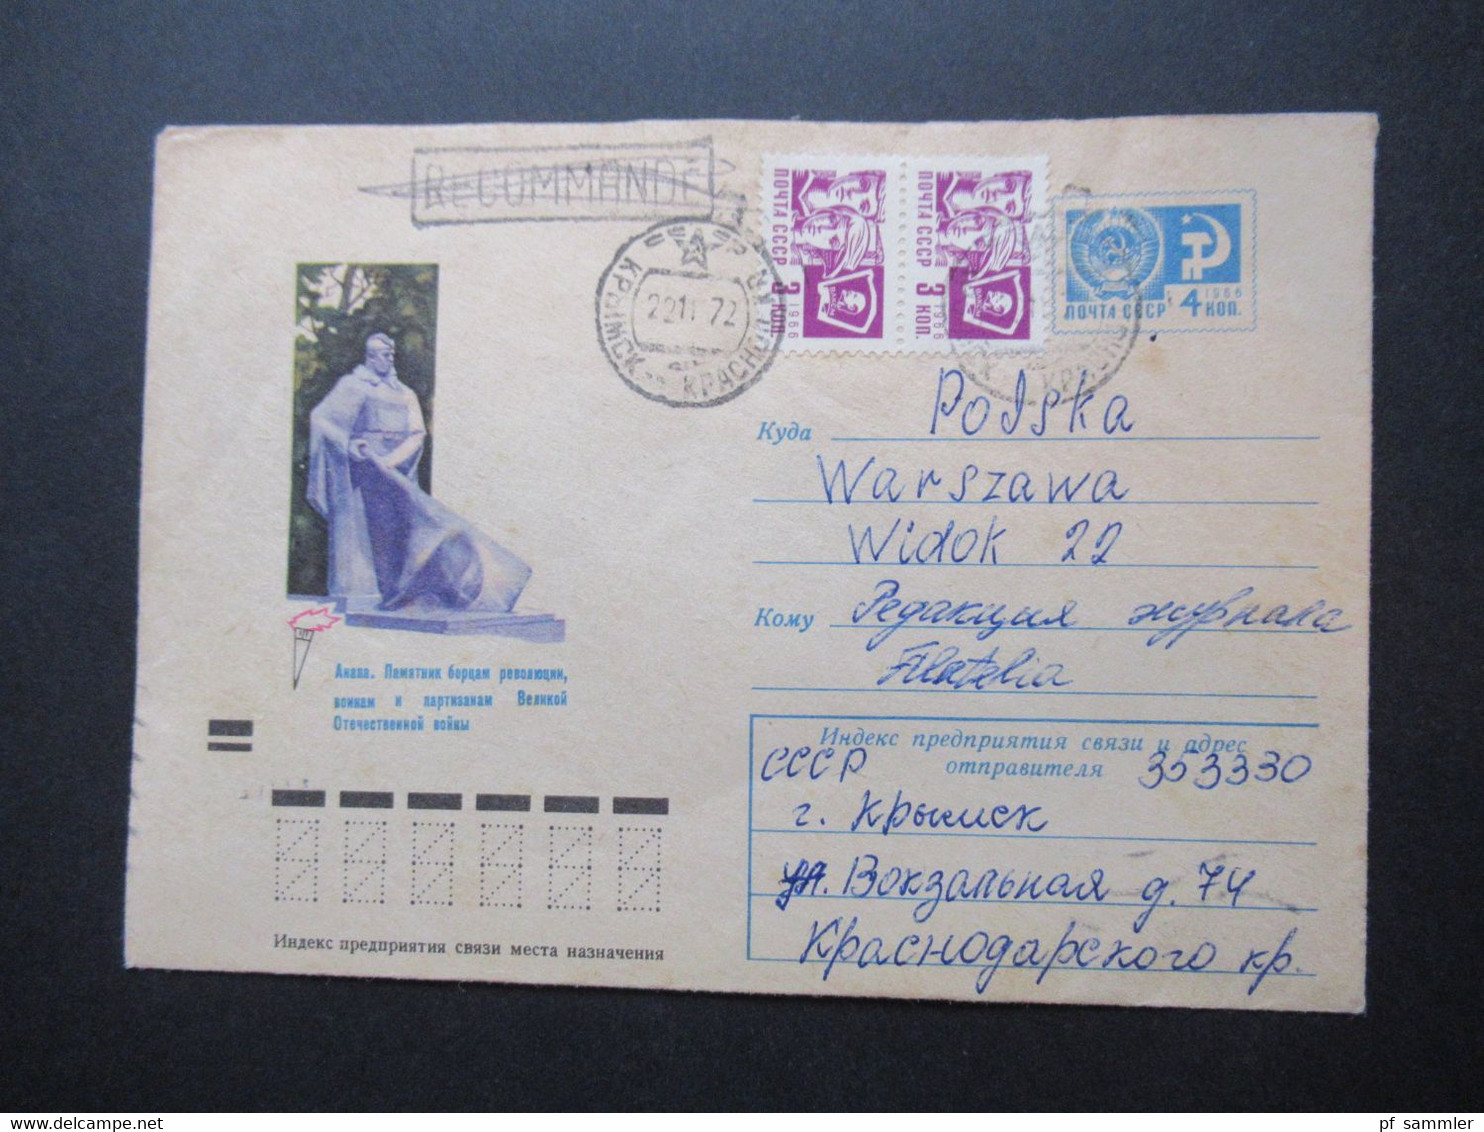 Sowjetunion UdSSR GA Bildmschläge ca. 1920er - 80er Jahre insg. 57 Stück fast alles nach Polen gelaufen! auch R-Briefe